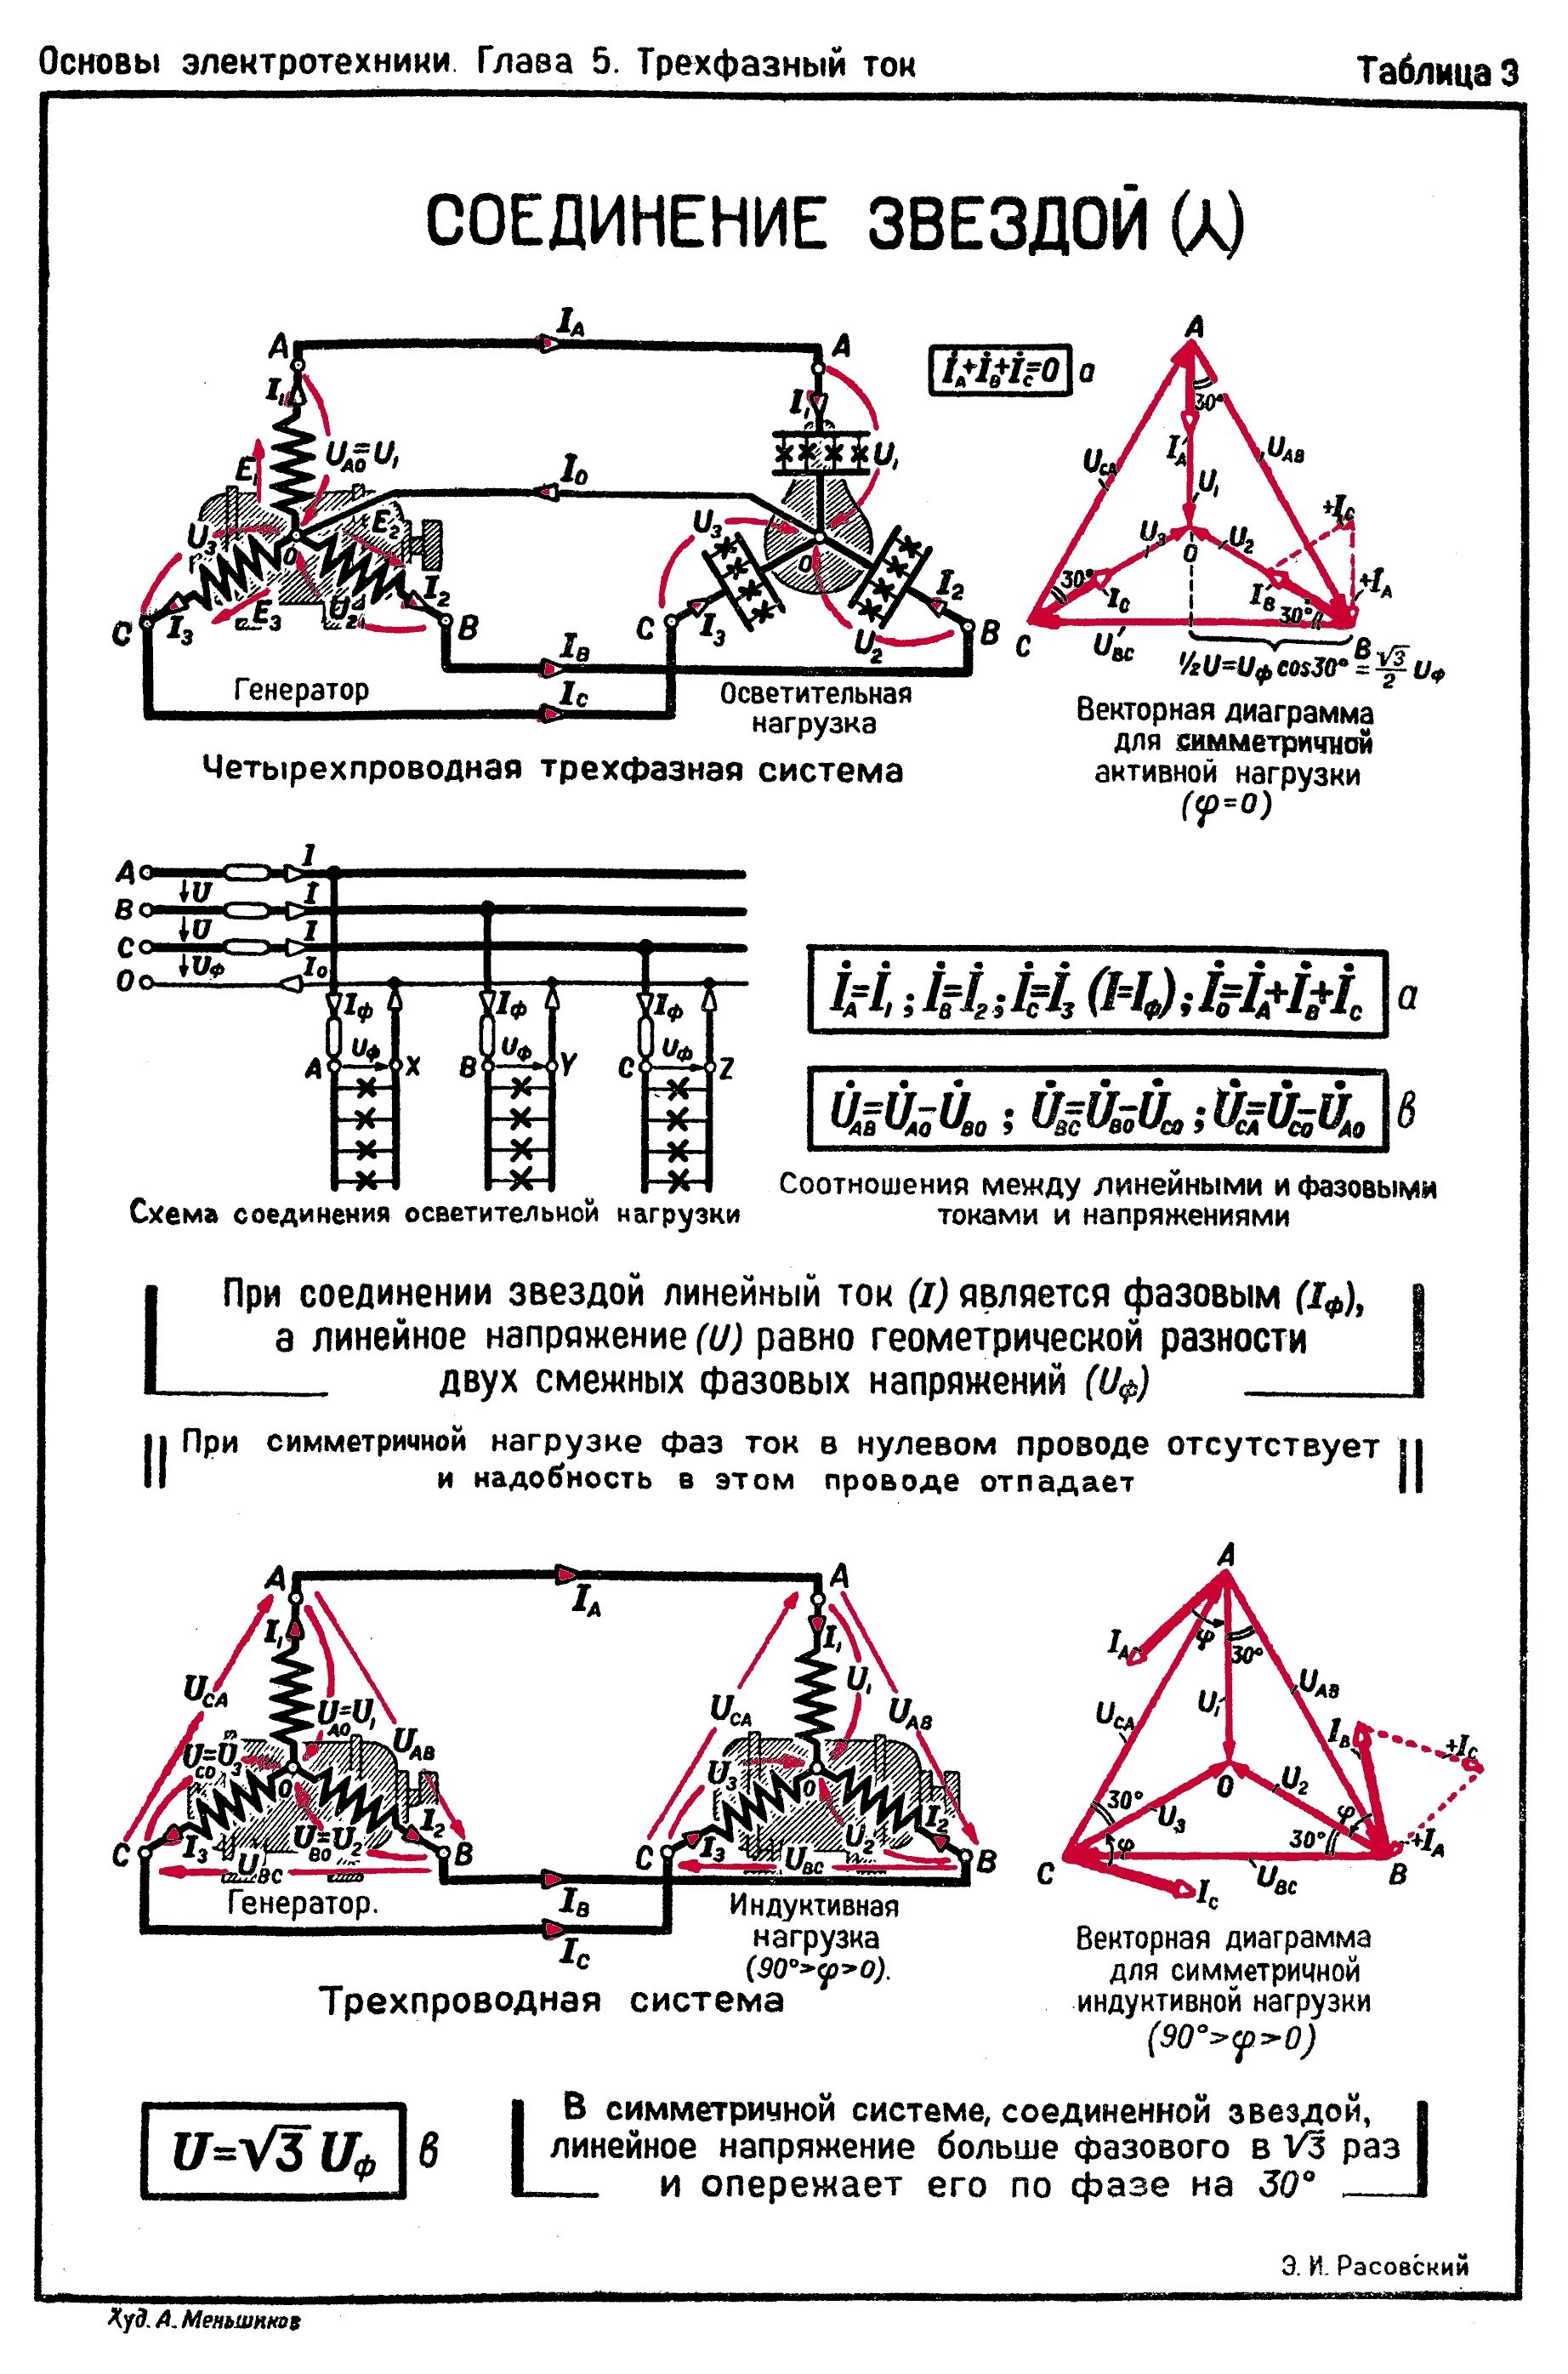 Соединение треугольником в трехфазной цепи электродвигателя. Соединение фаз нагрузки в звезду и треугольник. Соединение звездой и треугольником разница. Соединение звезда-треугольник в трехфазной. Разница соединений звезда